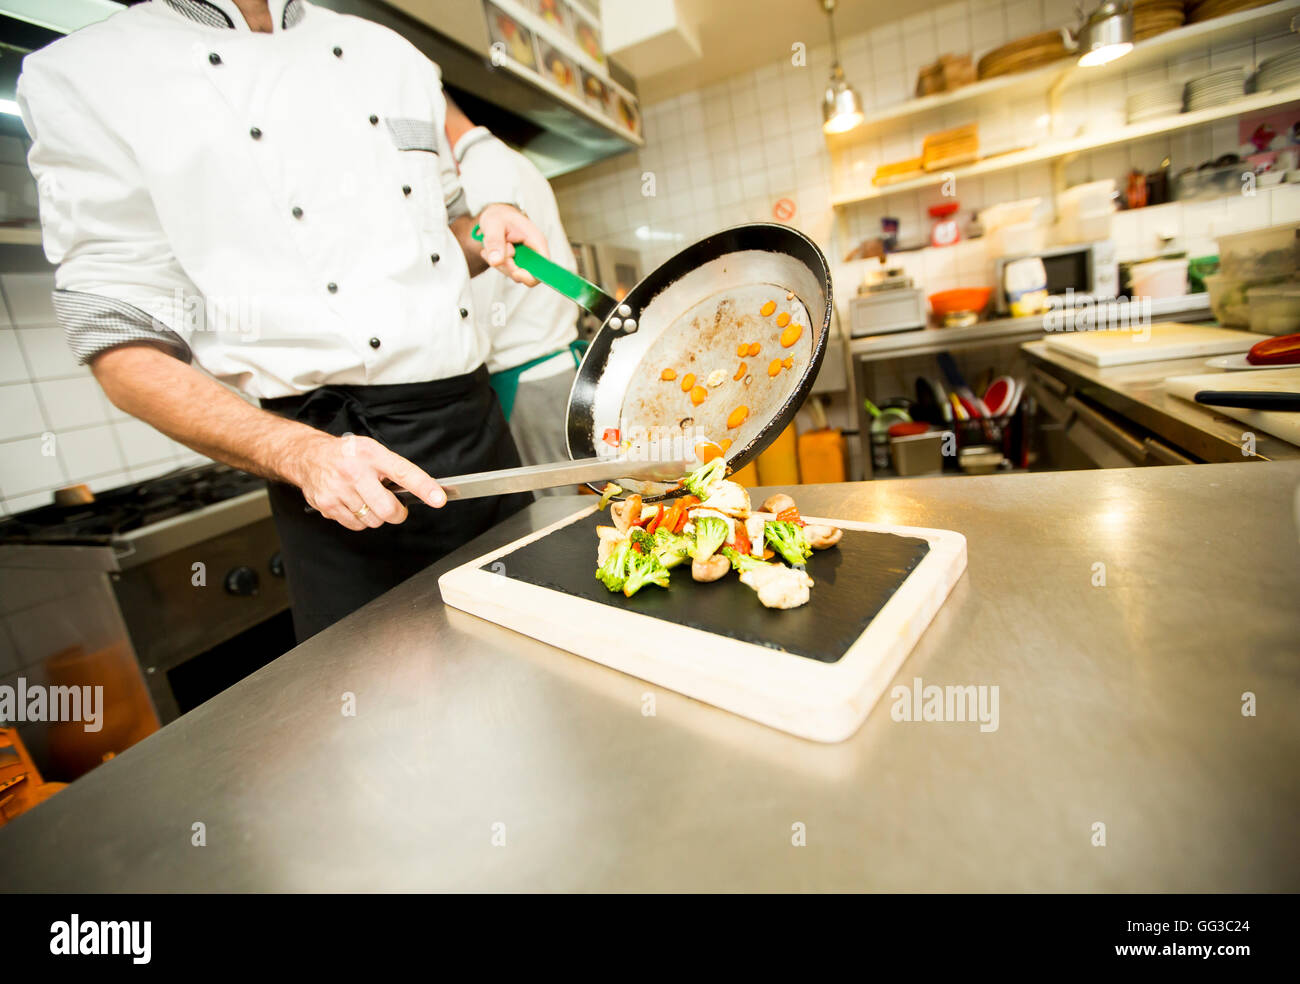 El chef pone a muchas deliciosas verduras en una cacerola en una placa negra Foto de stock